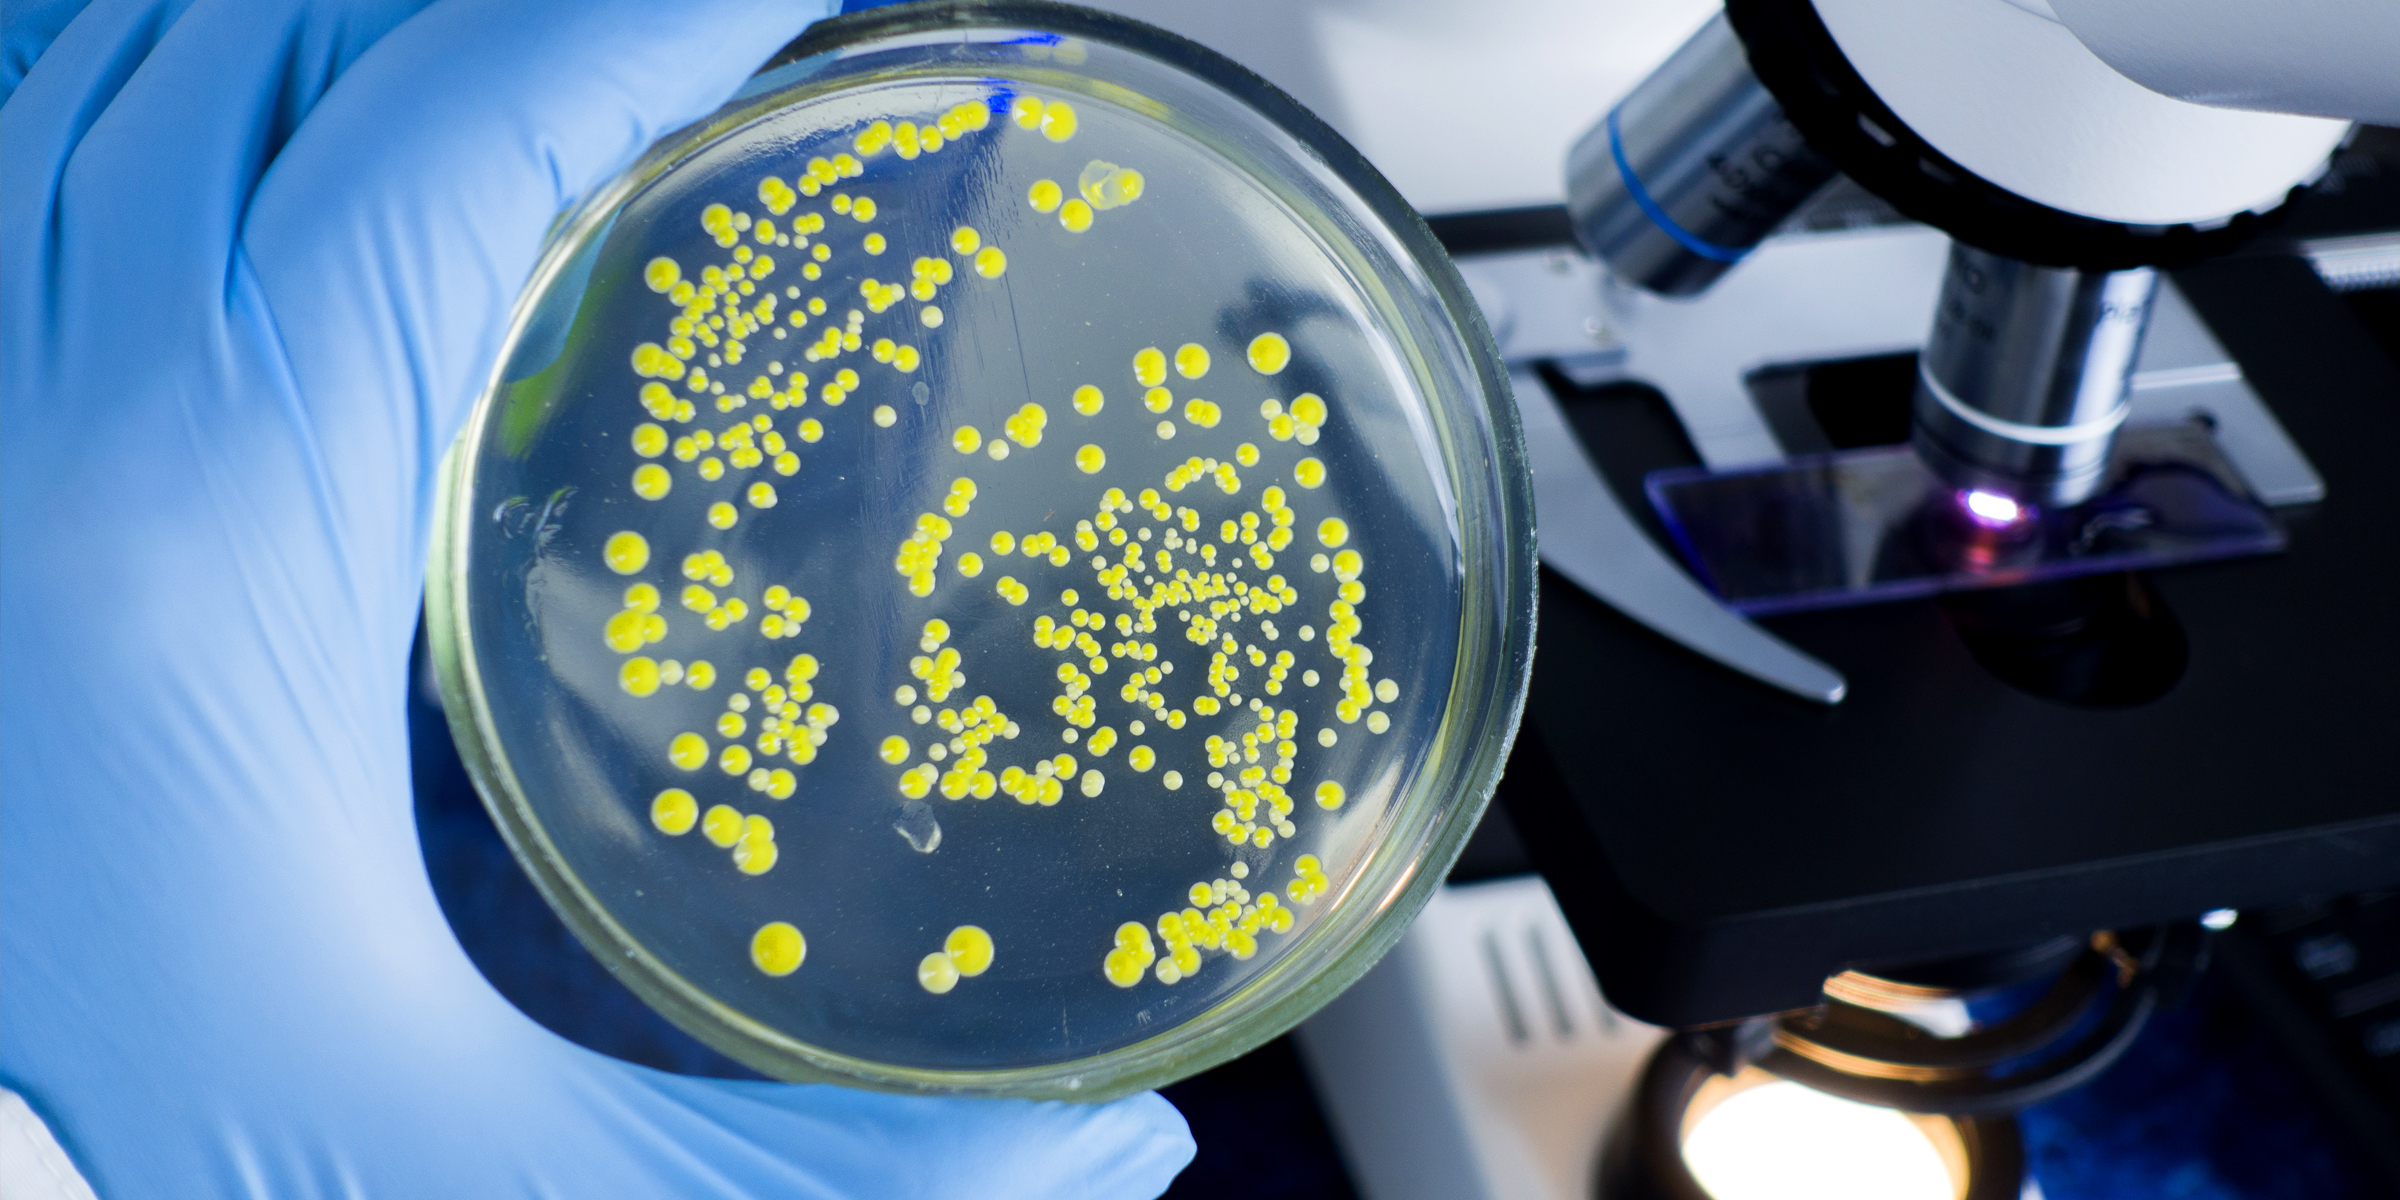 Bacteria | Source: Shutterstock